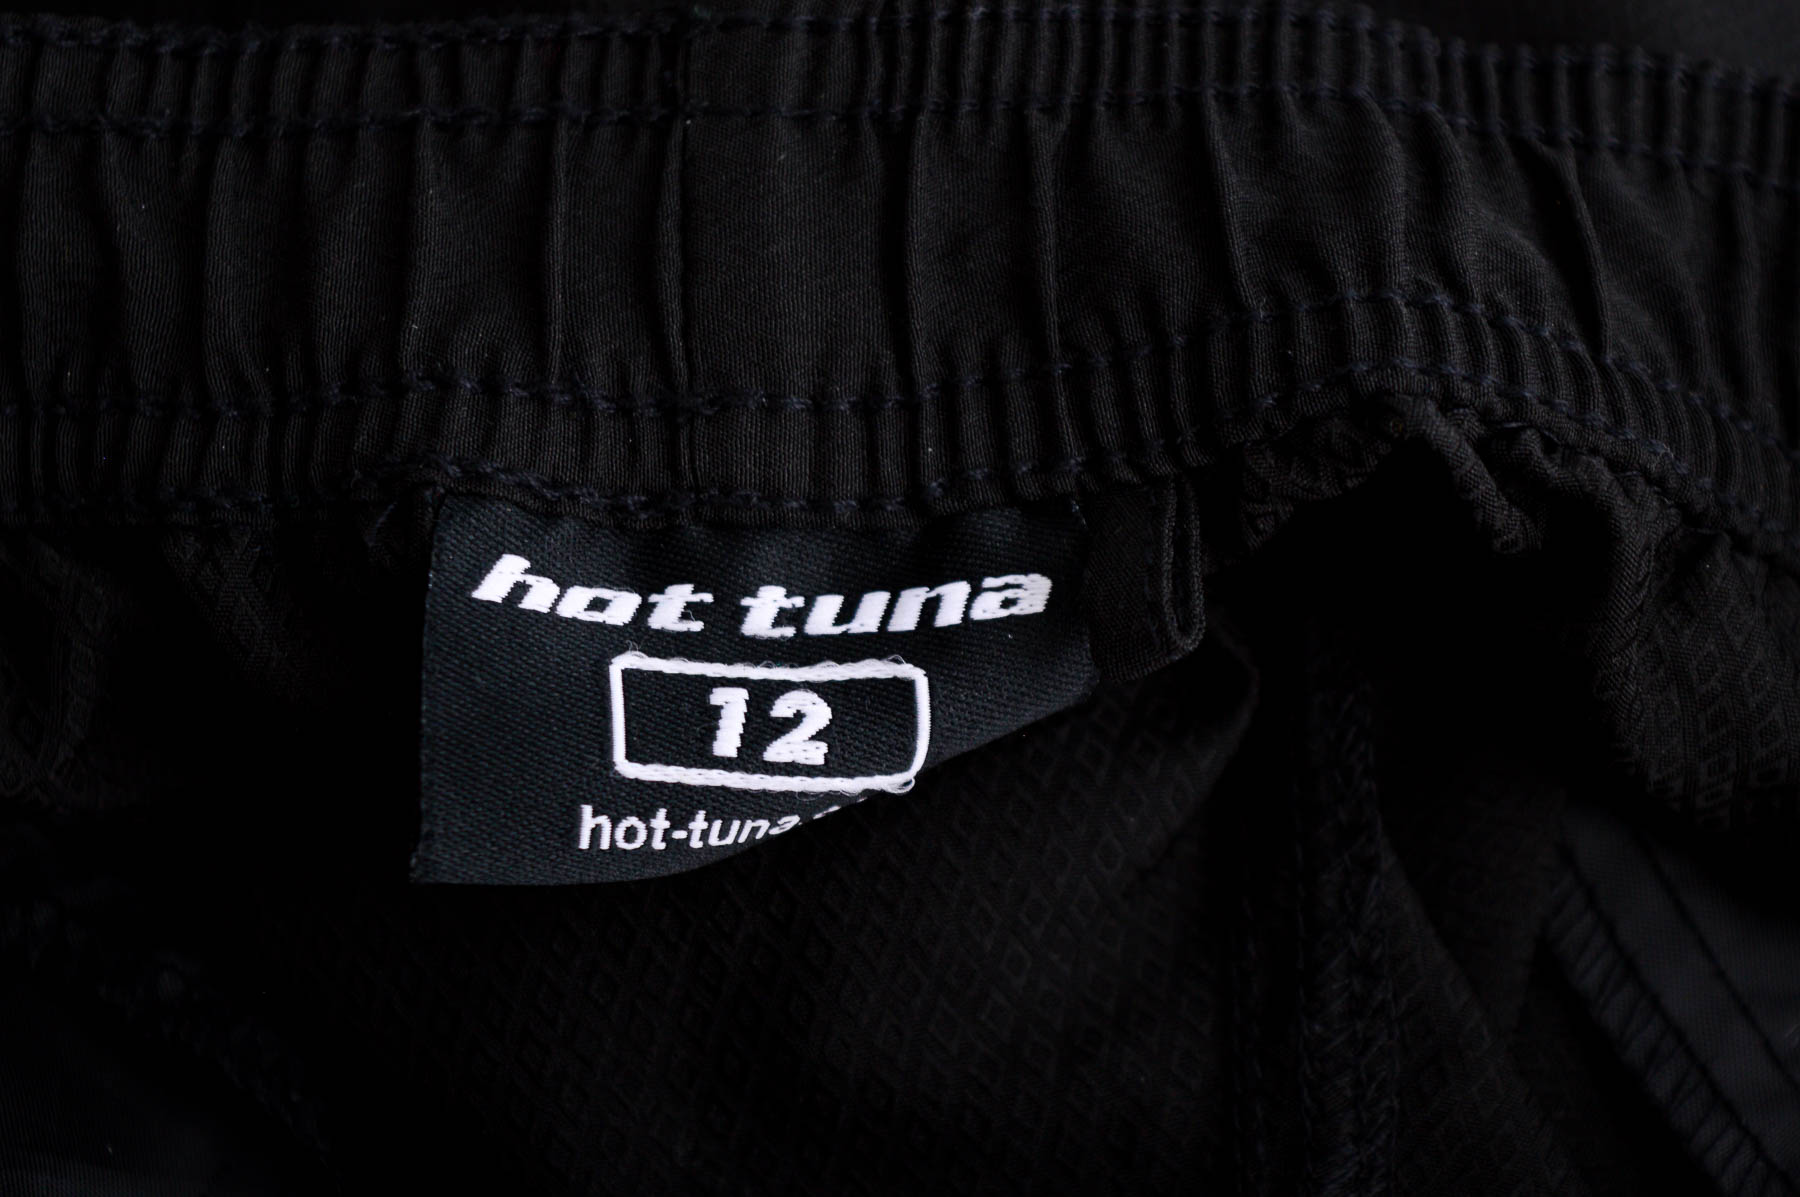 Women's shorts - Hot tuna - 2